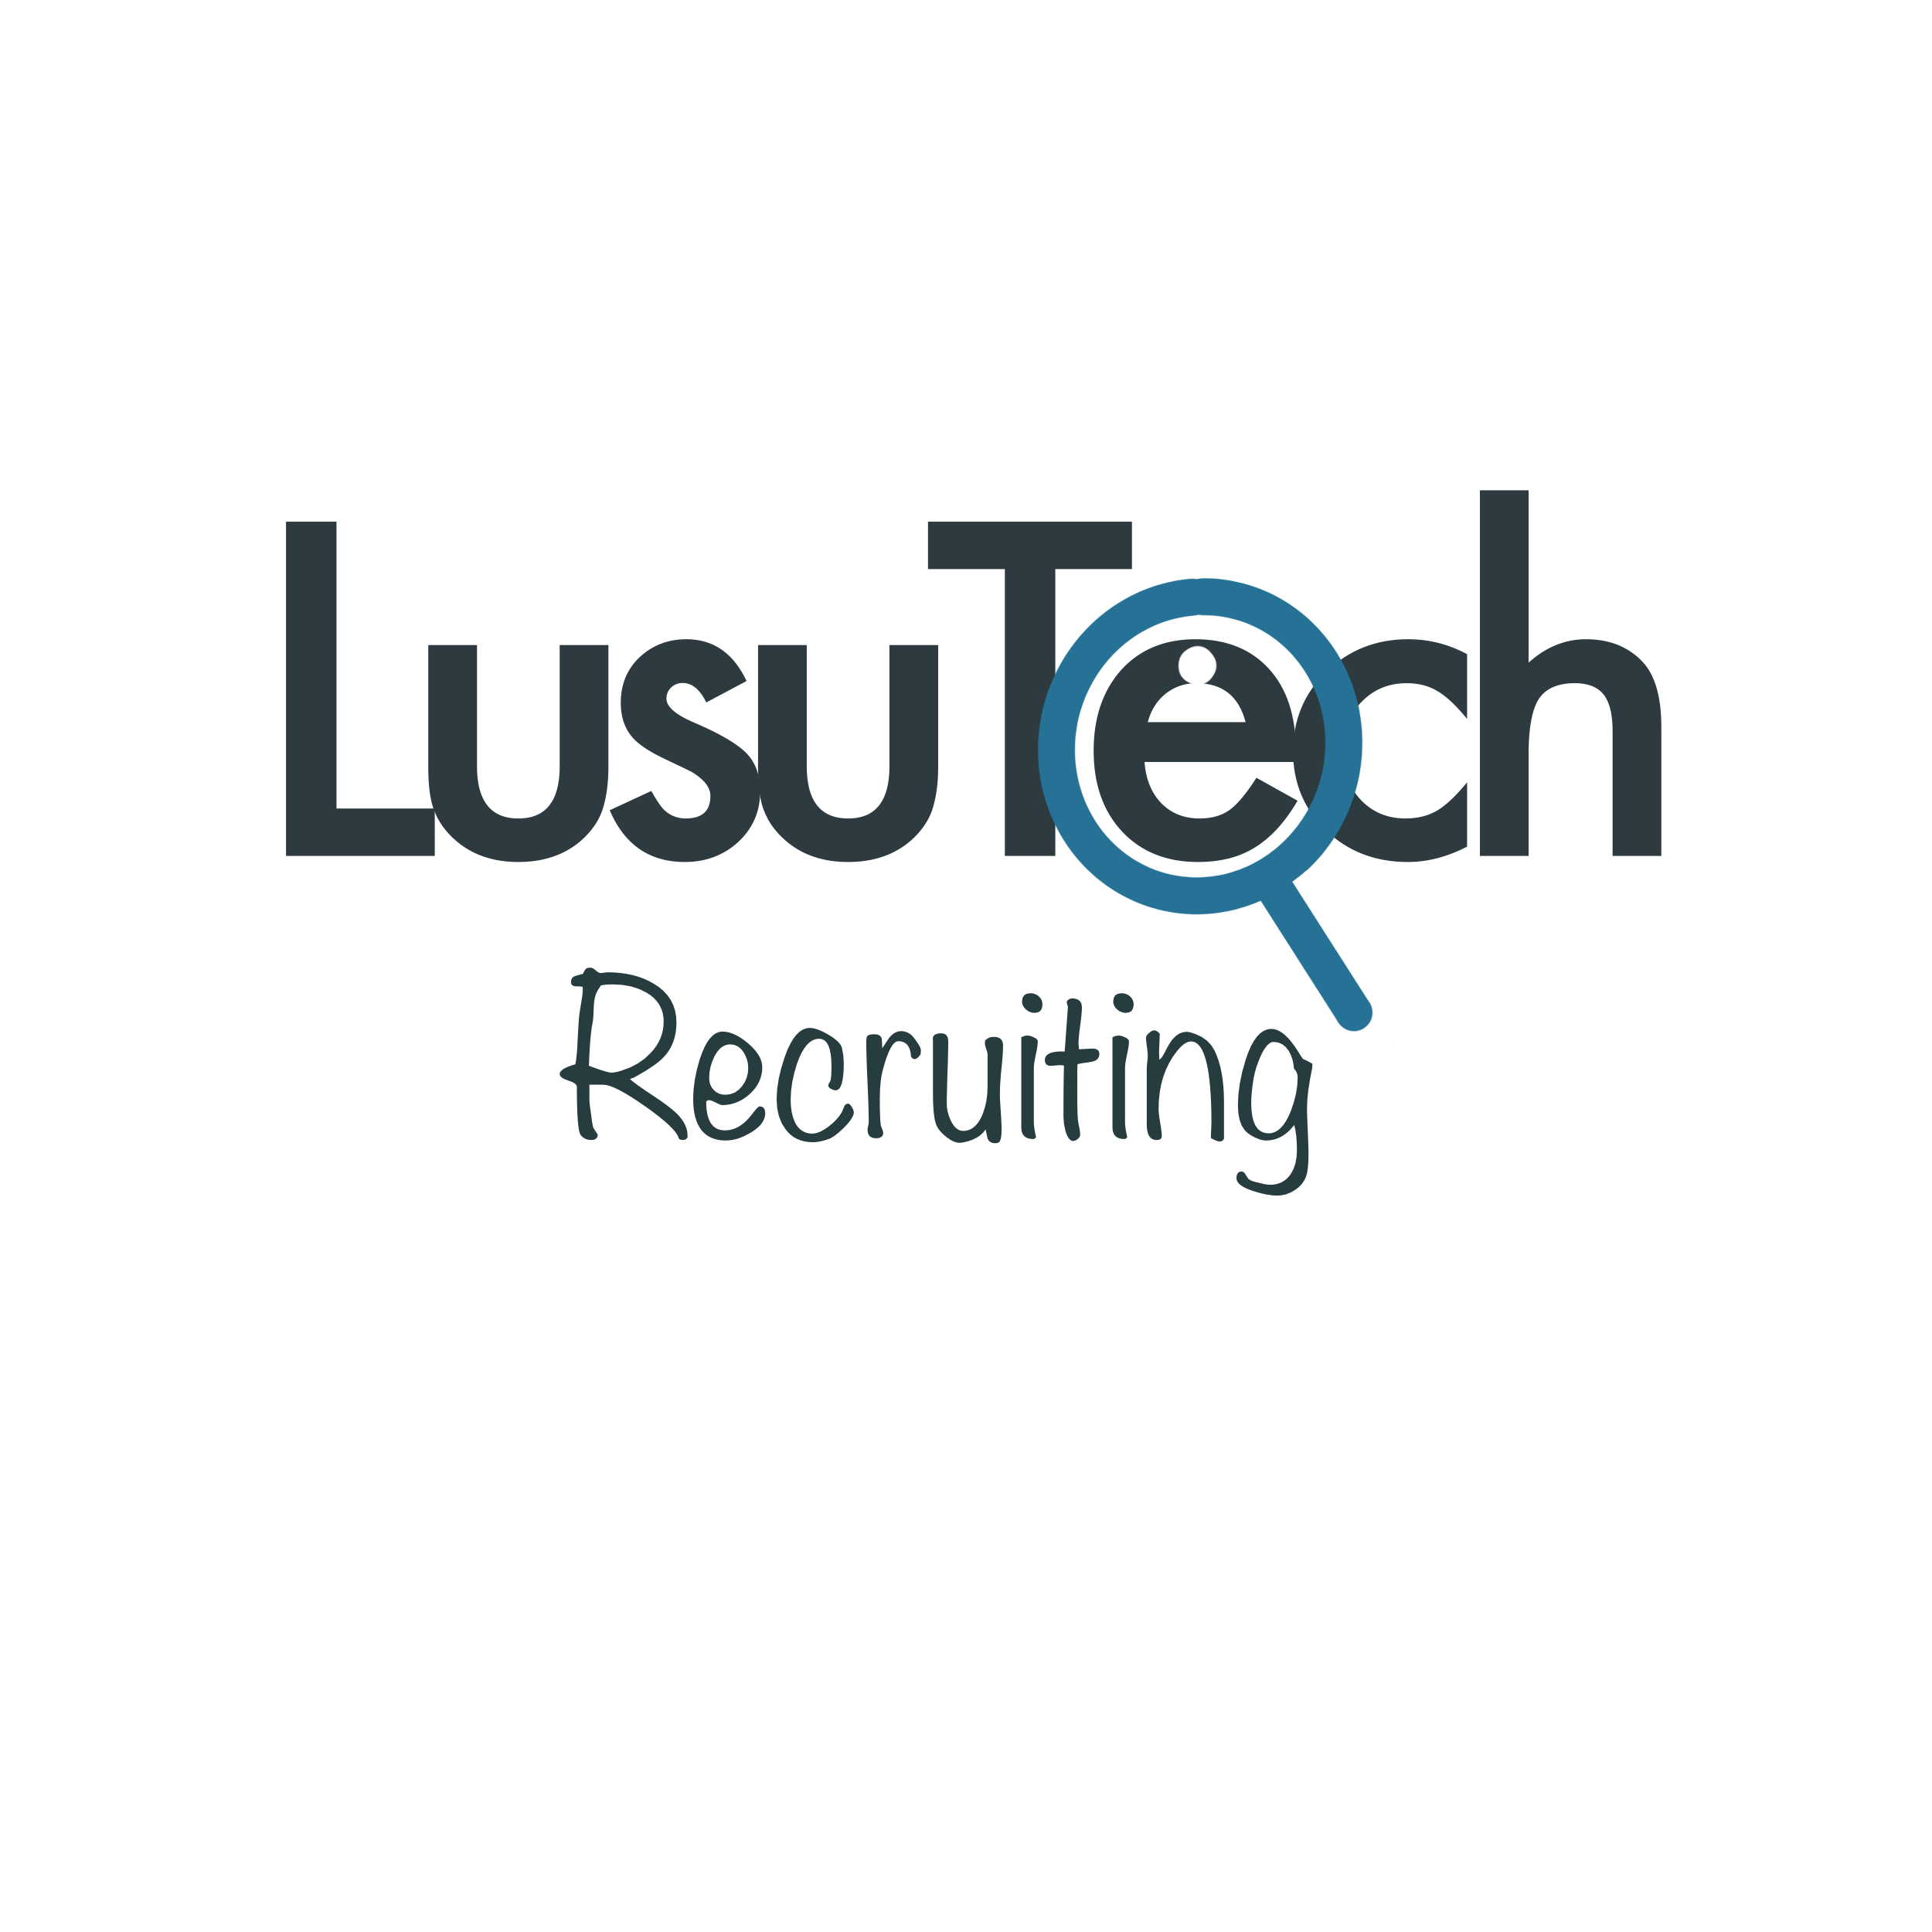 LusuTech Logo